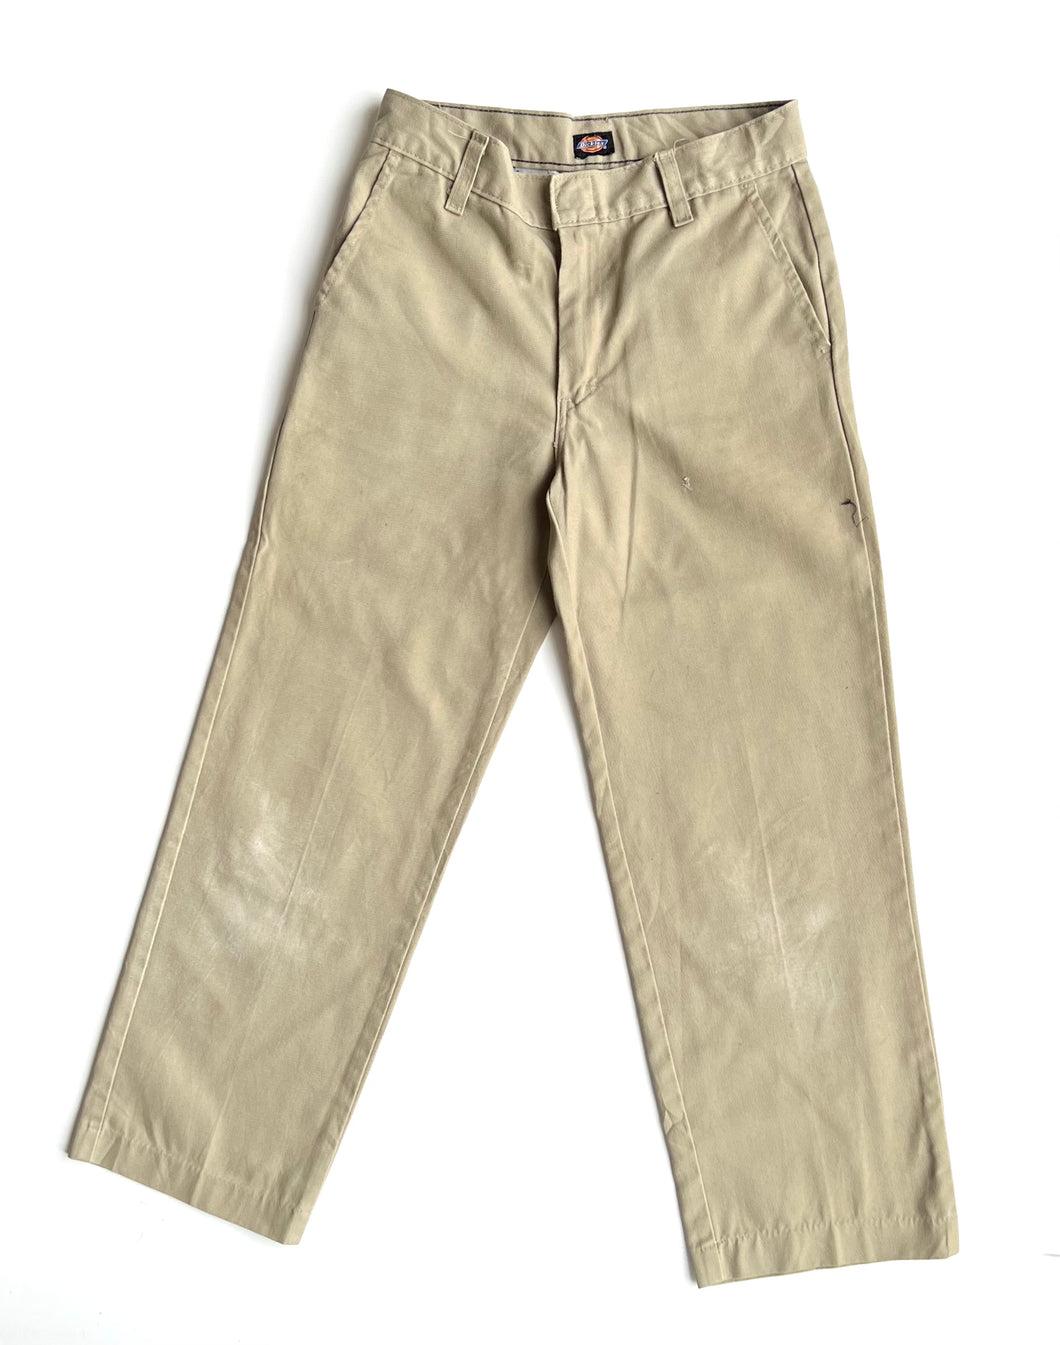 90s Dickies pants (Age 10)